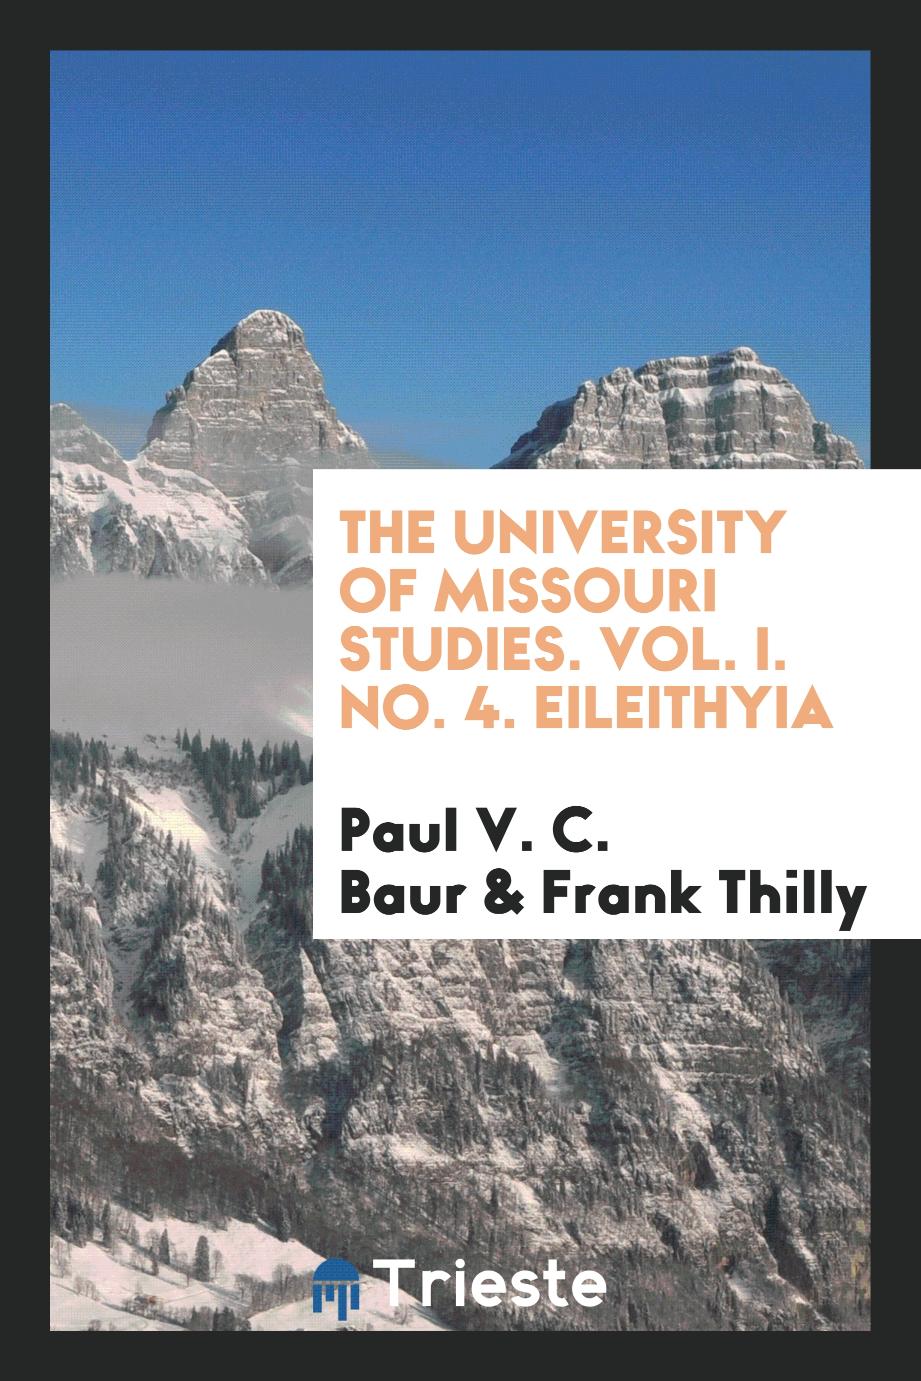 The University of Missouri Studies. Vol. I. No. 4. Eileithyia